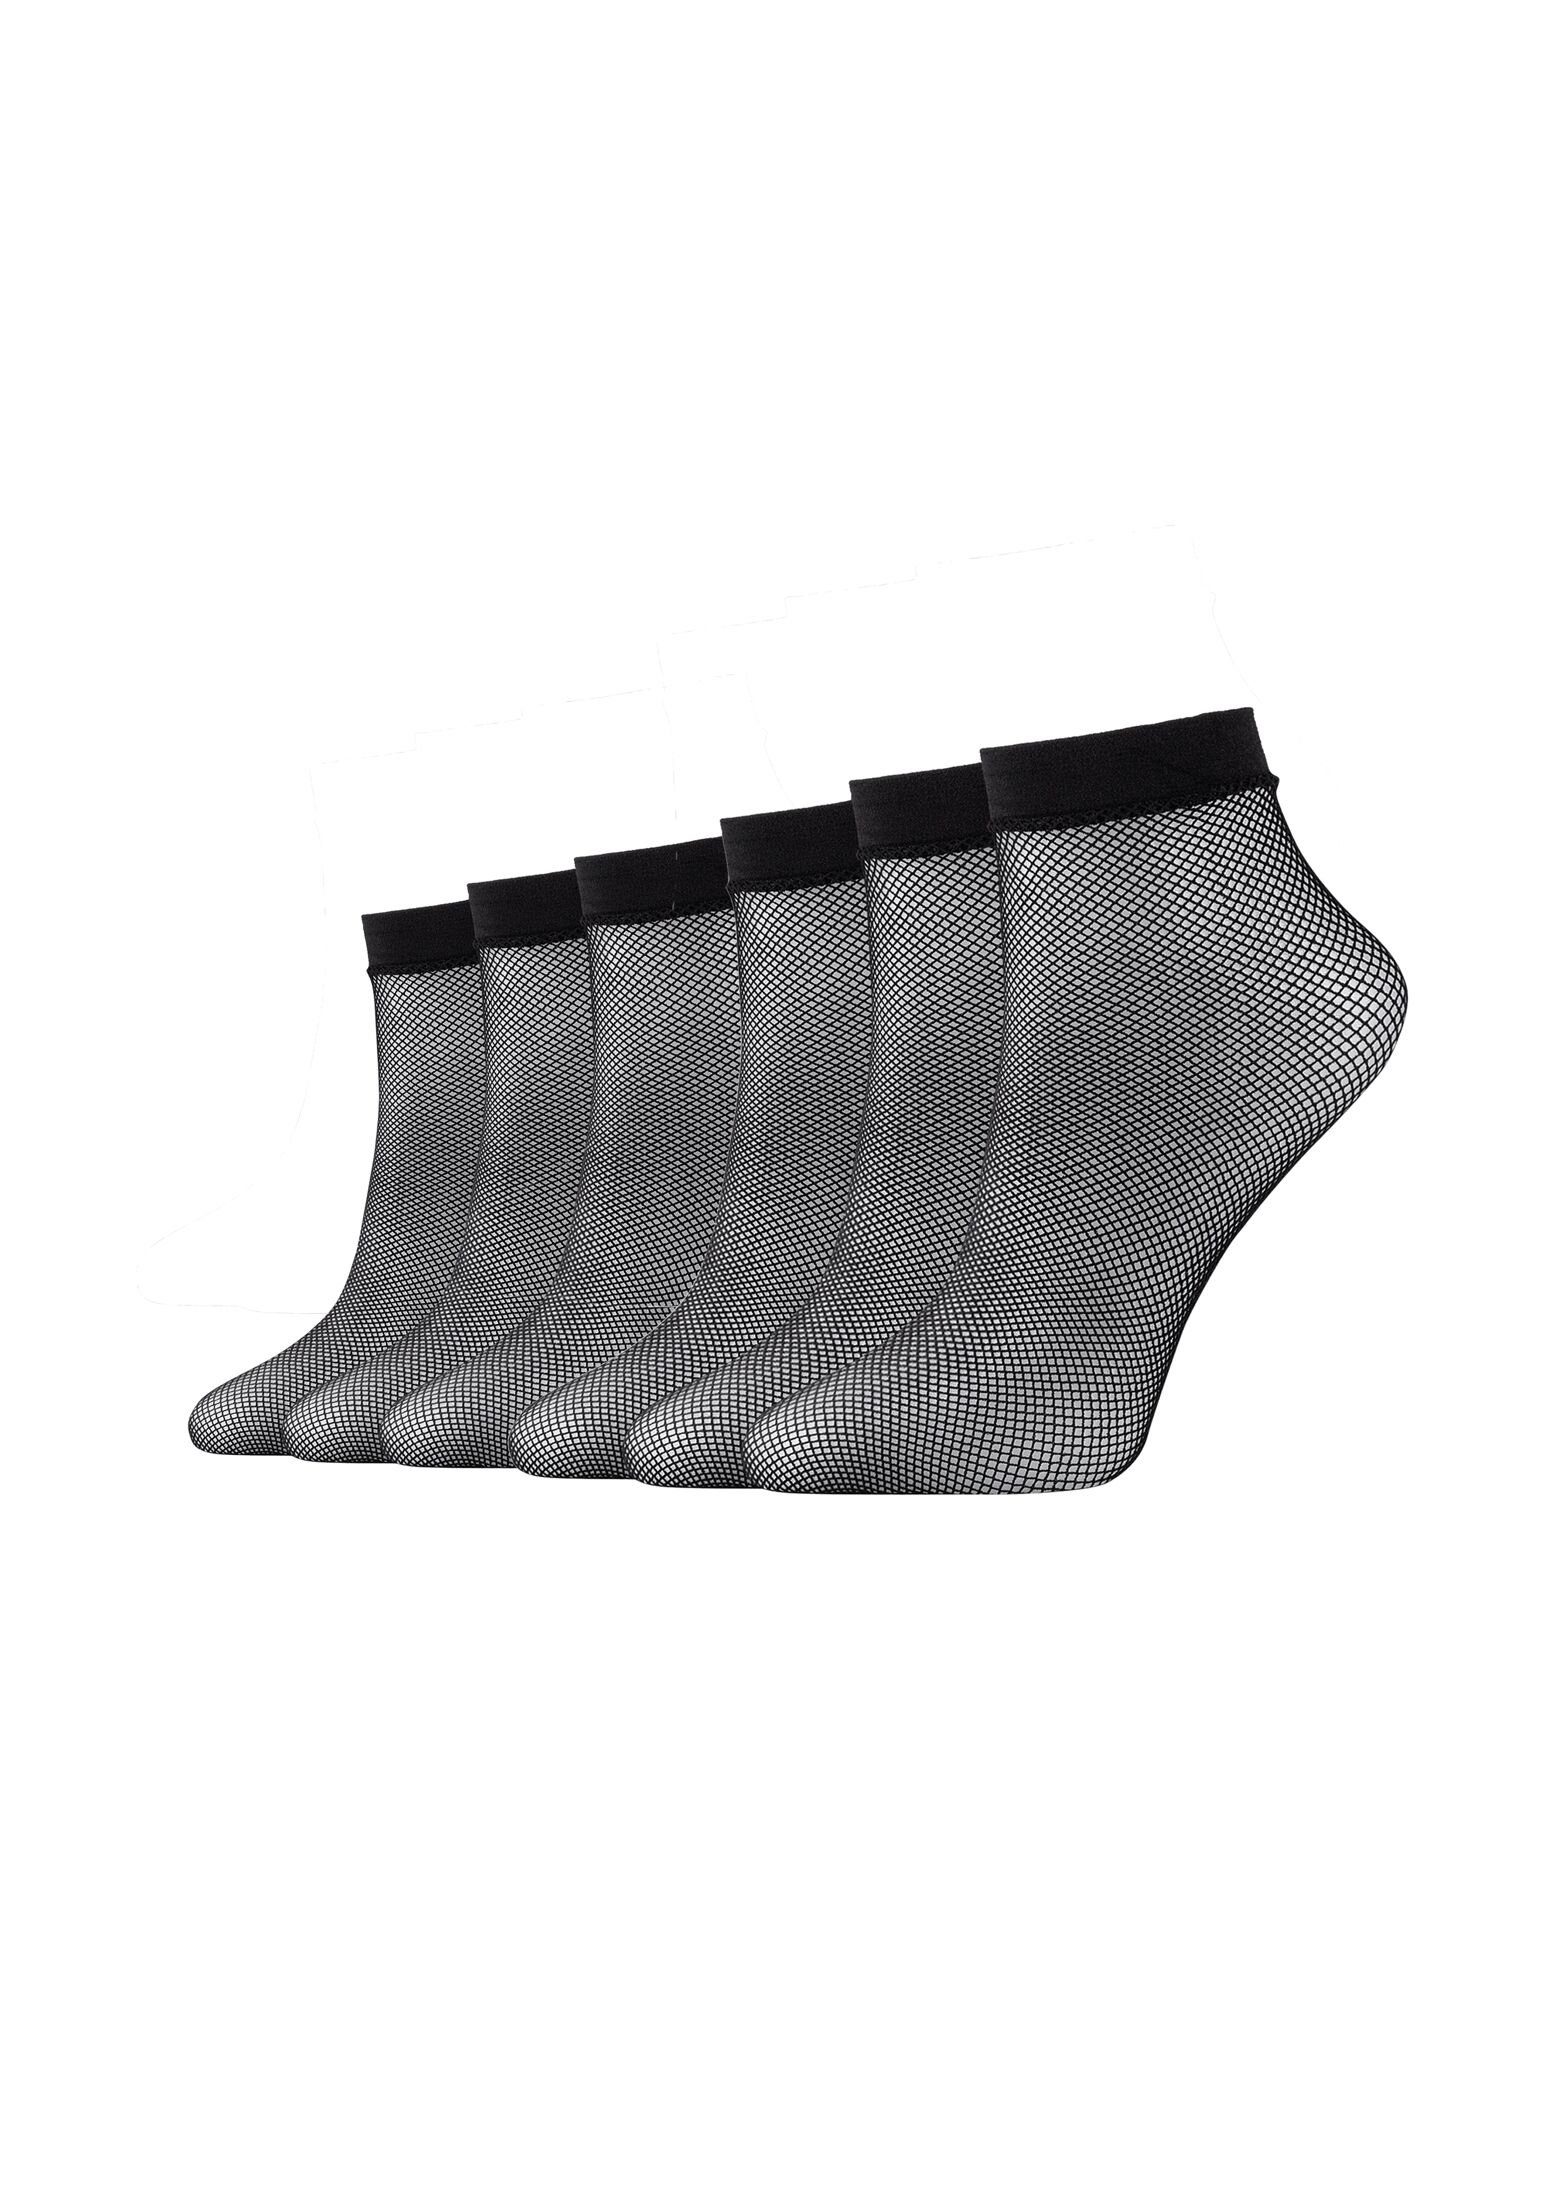 6er Socken Socken Material Pack, Camano und Hochwertiges aus Polyamid Elasthan